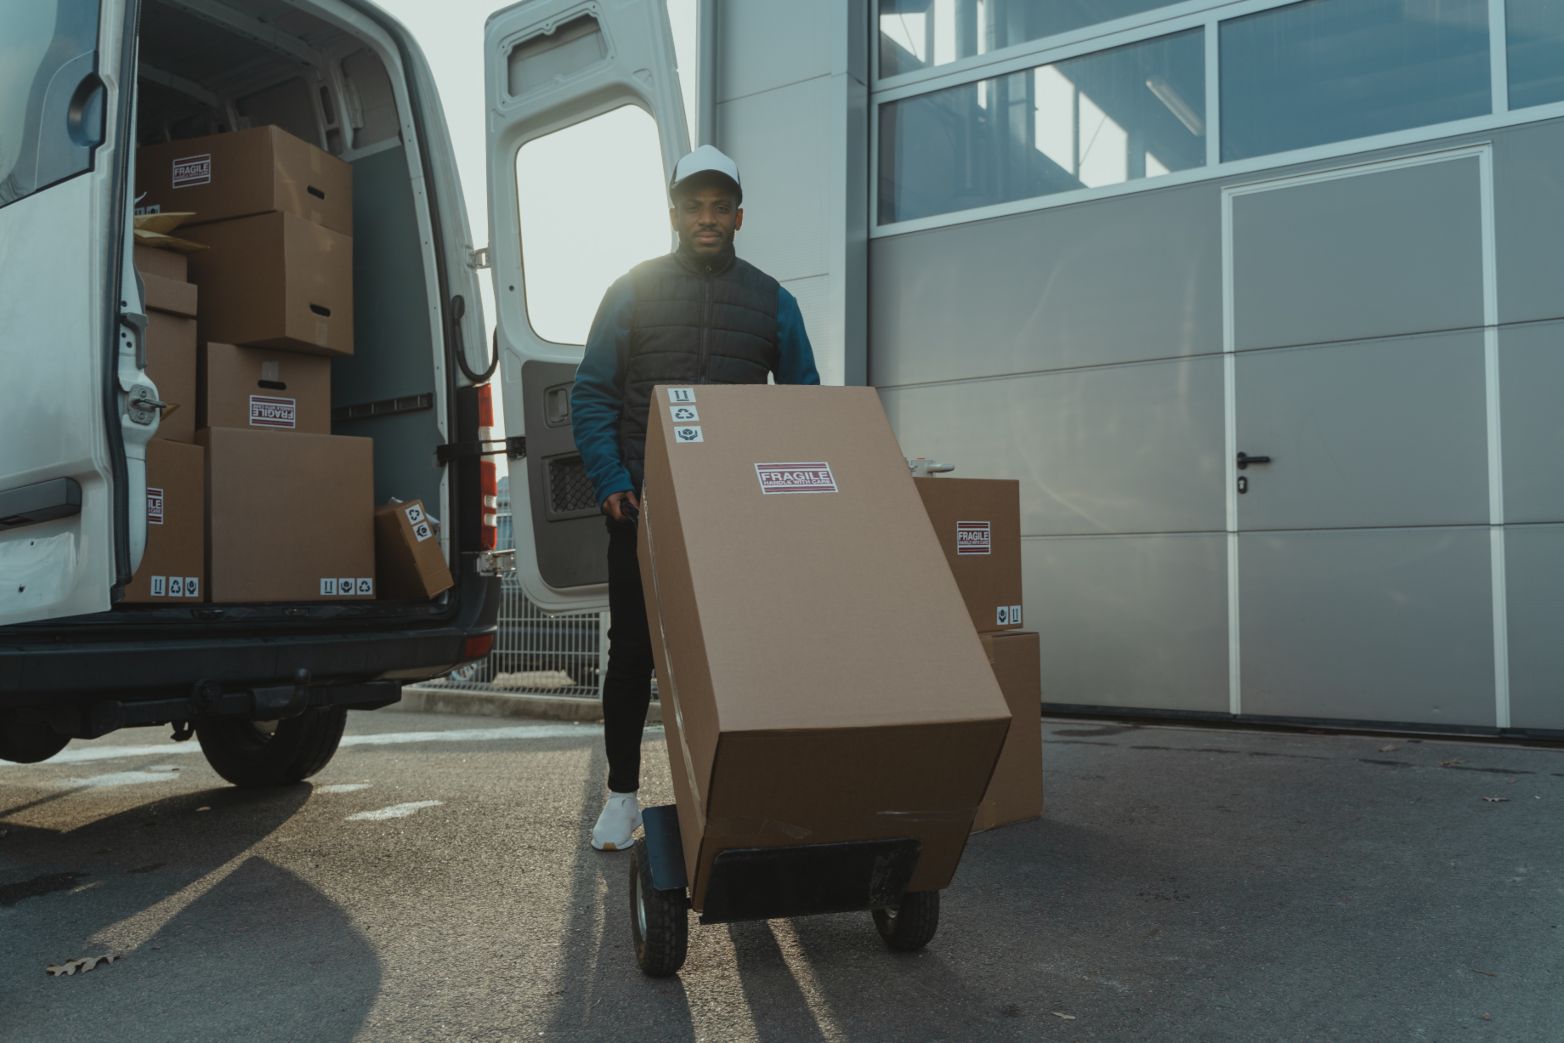 Embalaje, un encargado de almacén bajando cajas de cartón que protegen la mercancía de una empresa.